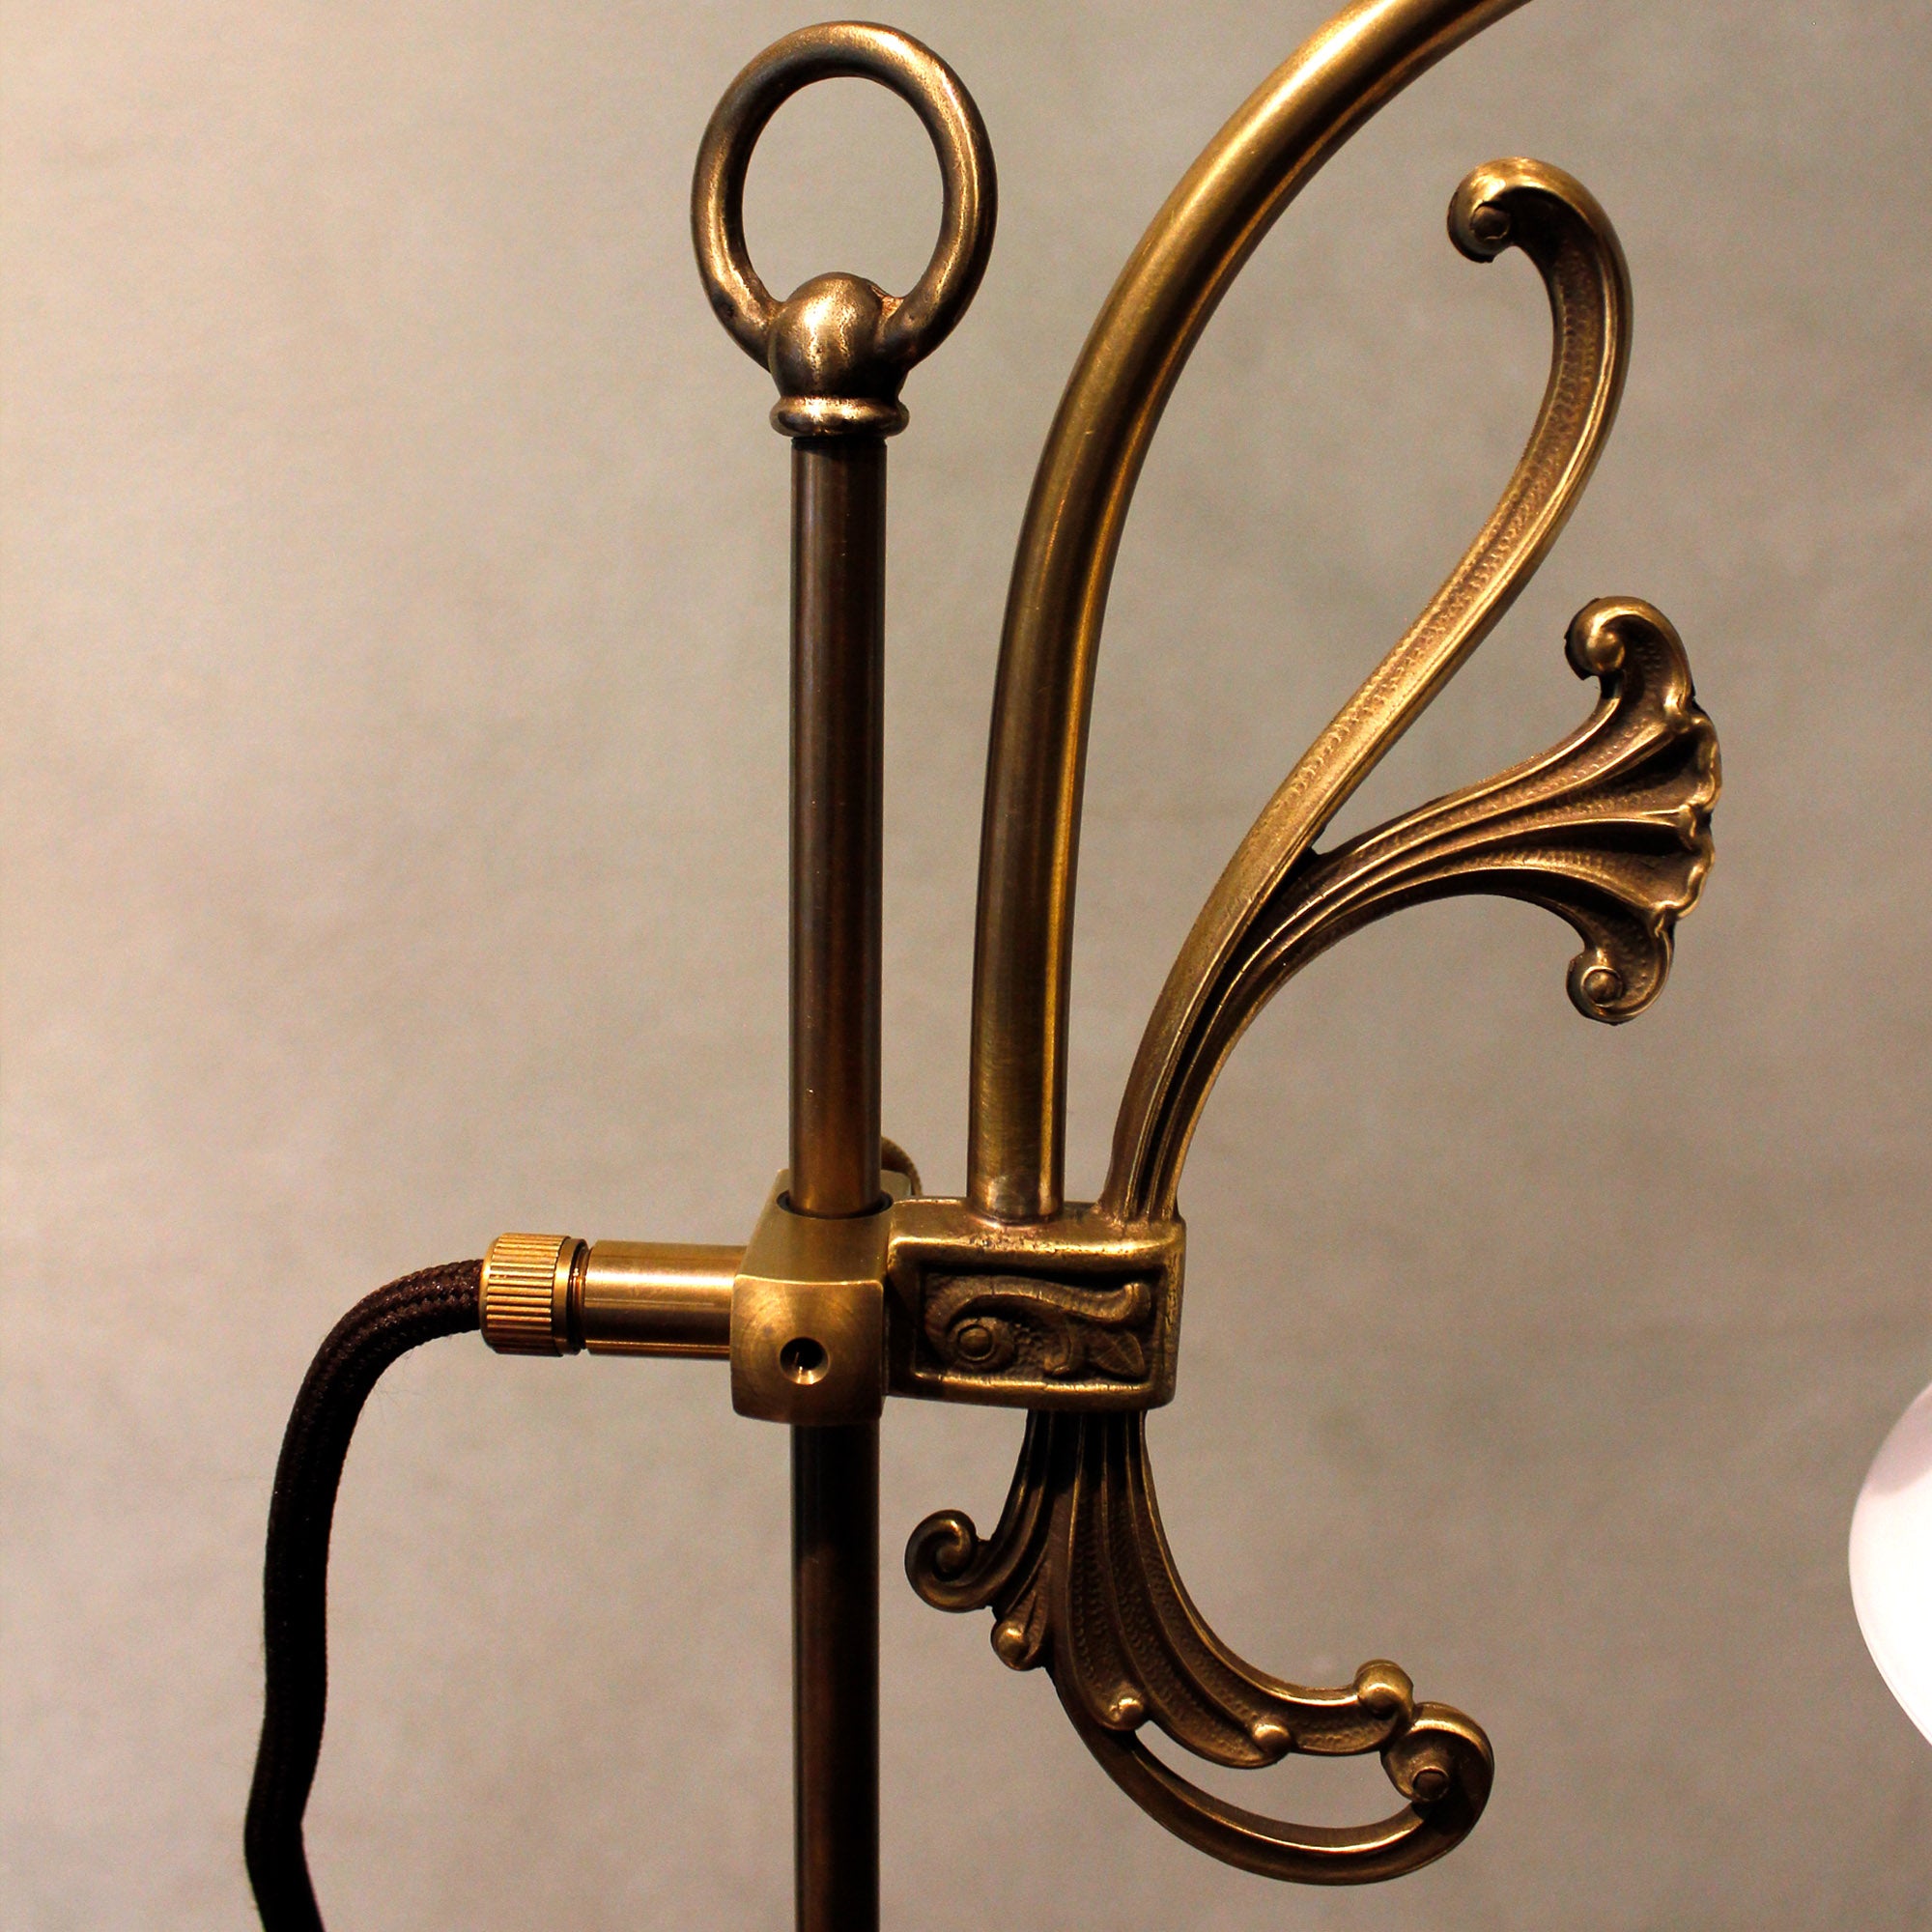 Art Nouveau Table Lamp "Elegance"